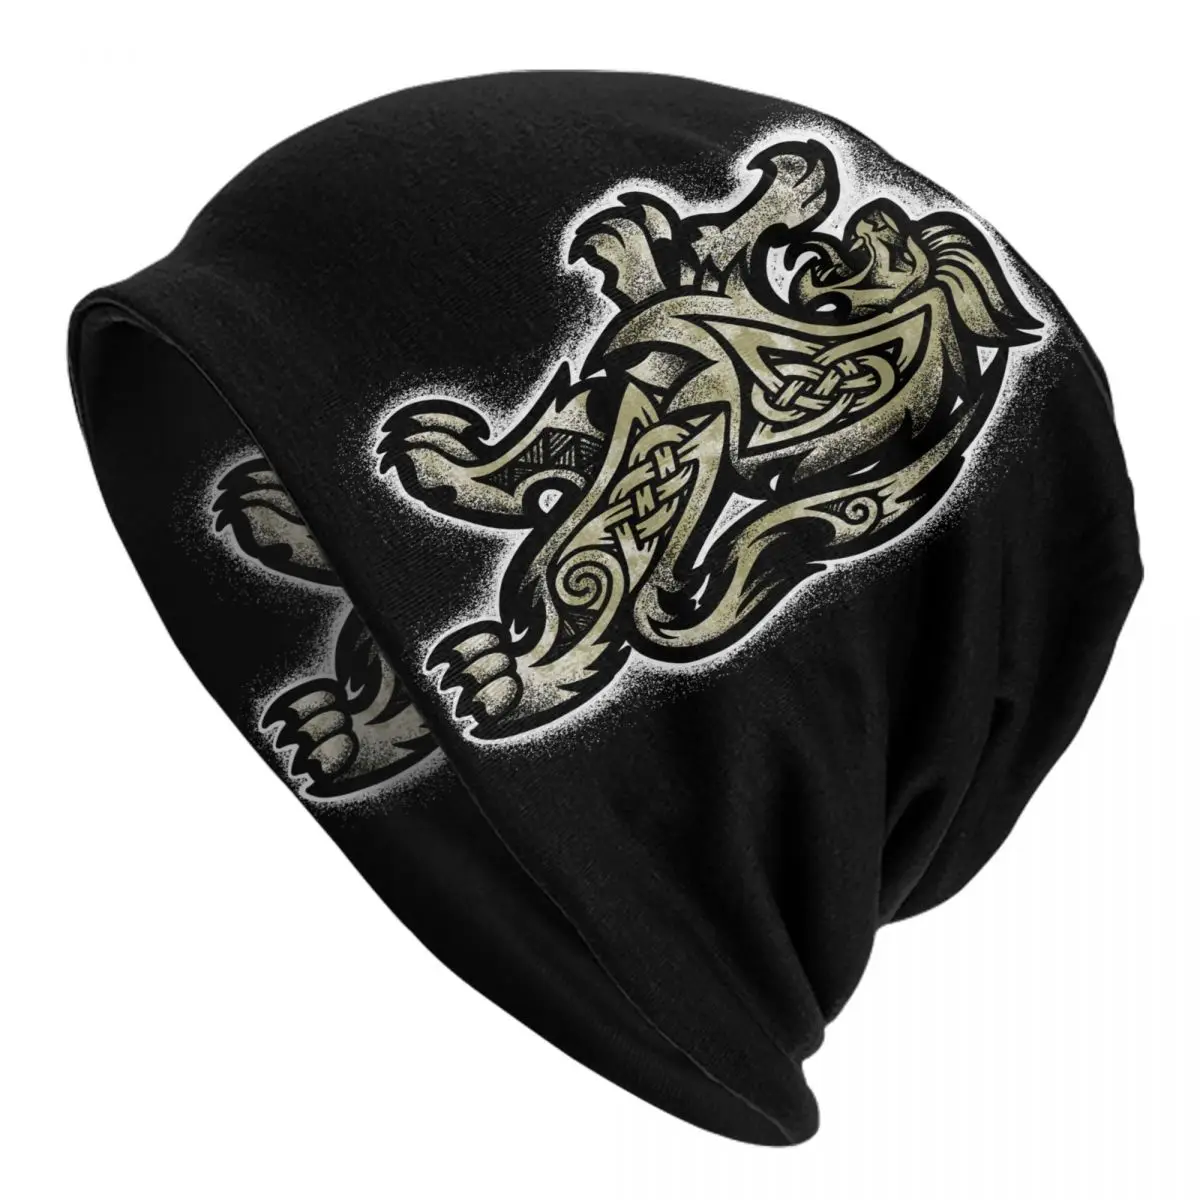 Heraldic Lion Caps Men Women Unisex Streetwear Winter Warm Knit Hat Adult funny Hats